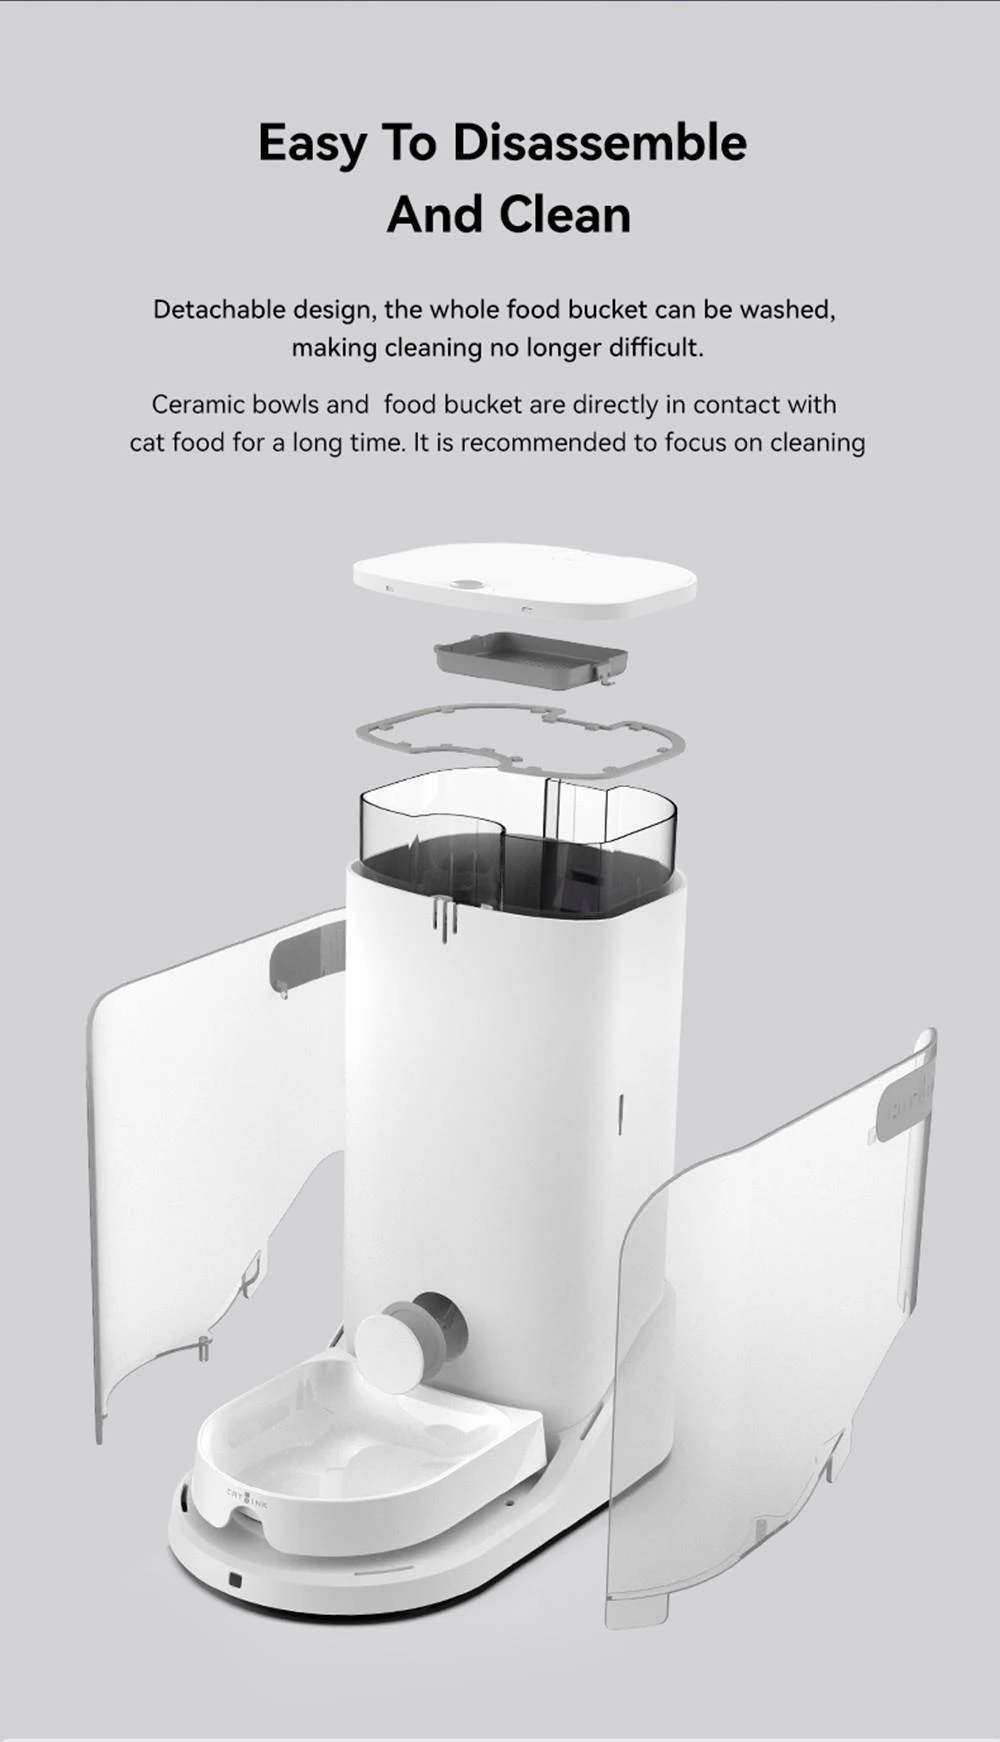 CATLINK CL-F-01 Kat Smart Voedselautomaat, 3.5L Capaciteit, Gegevens bijhouden, Dubbele voedingsondersteuning